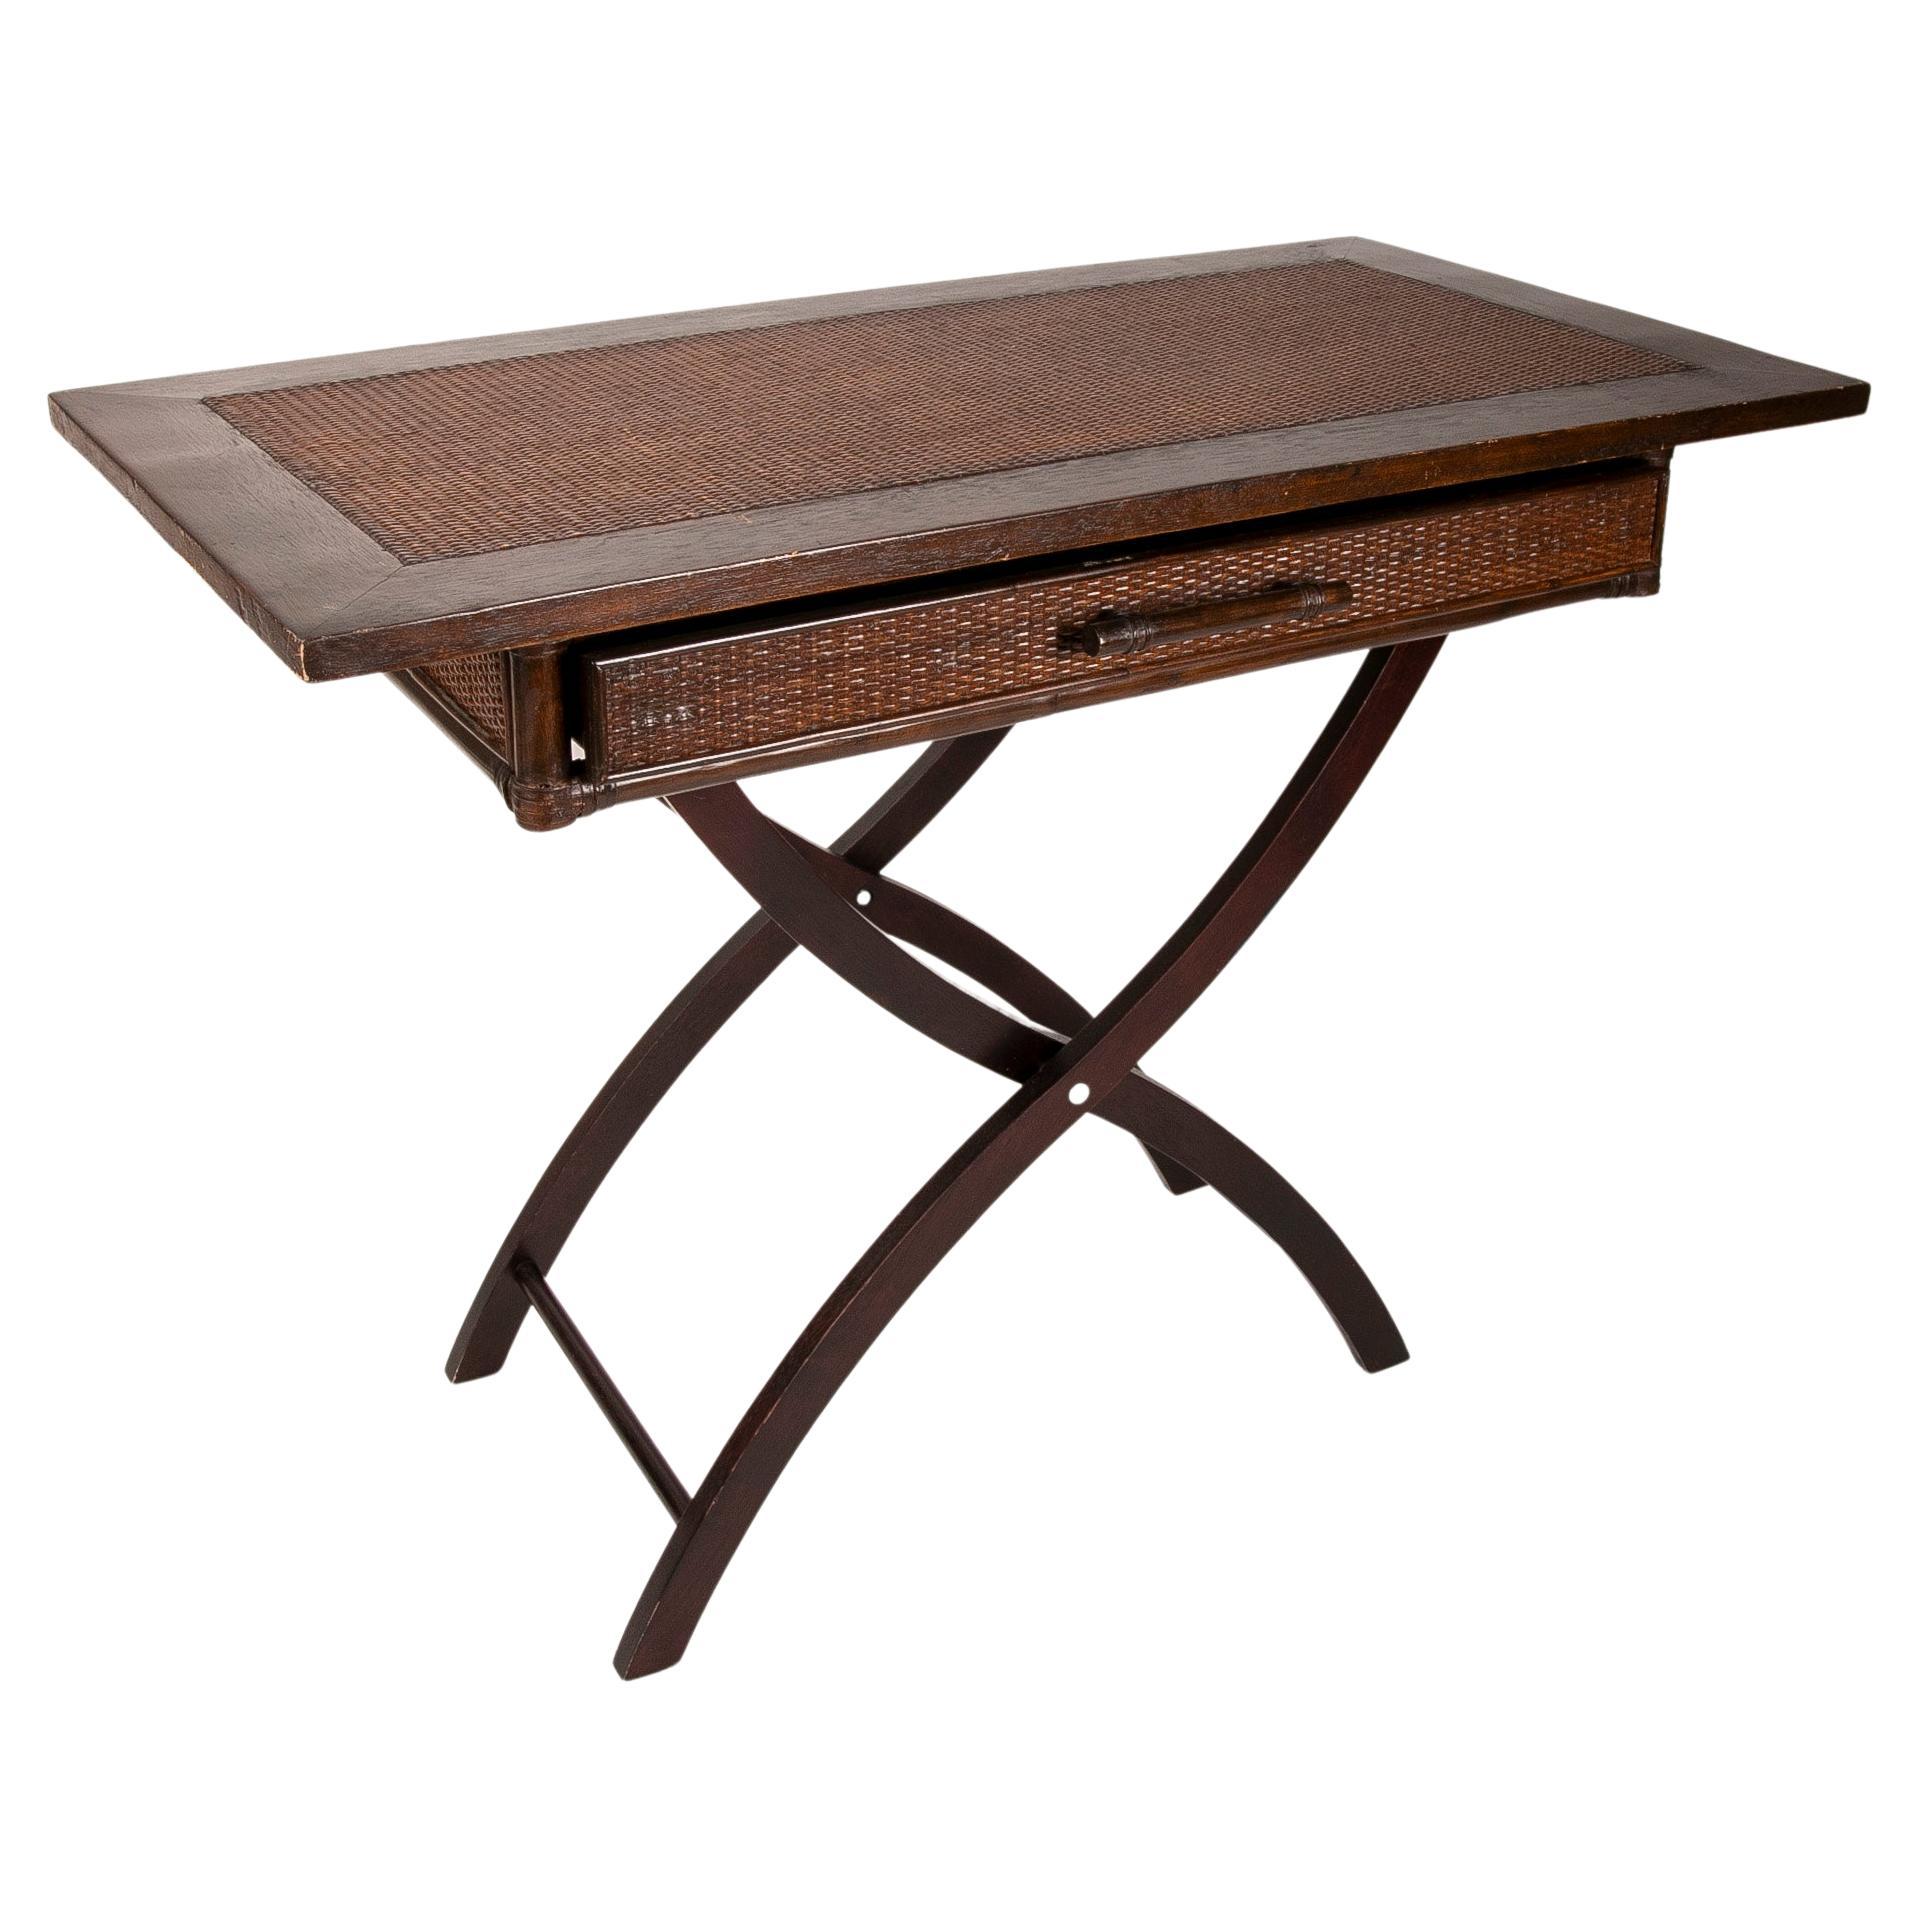 Table pliante en bois et osier avec tiroir frontal